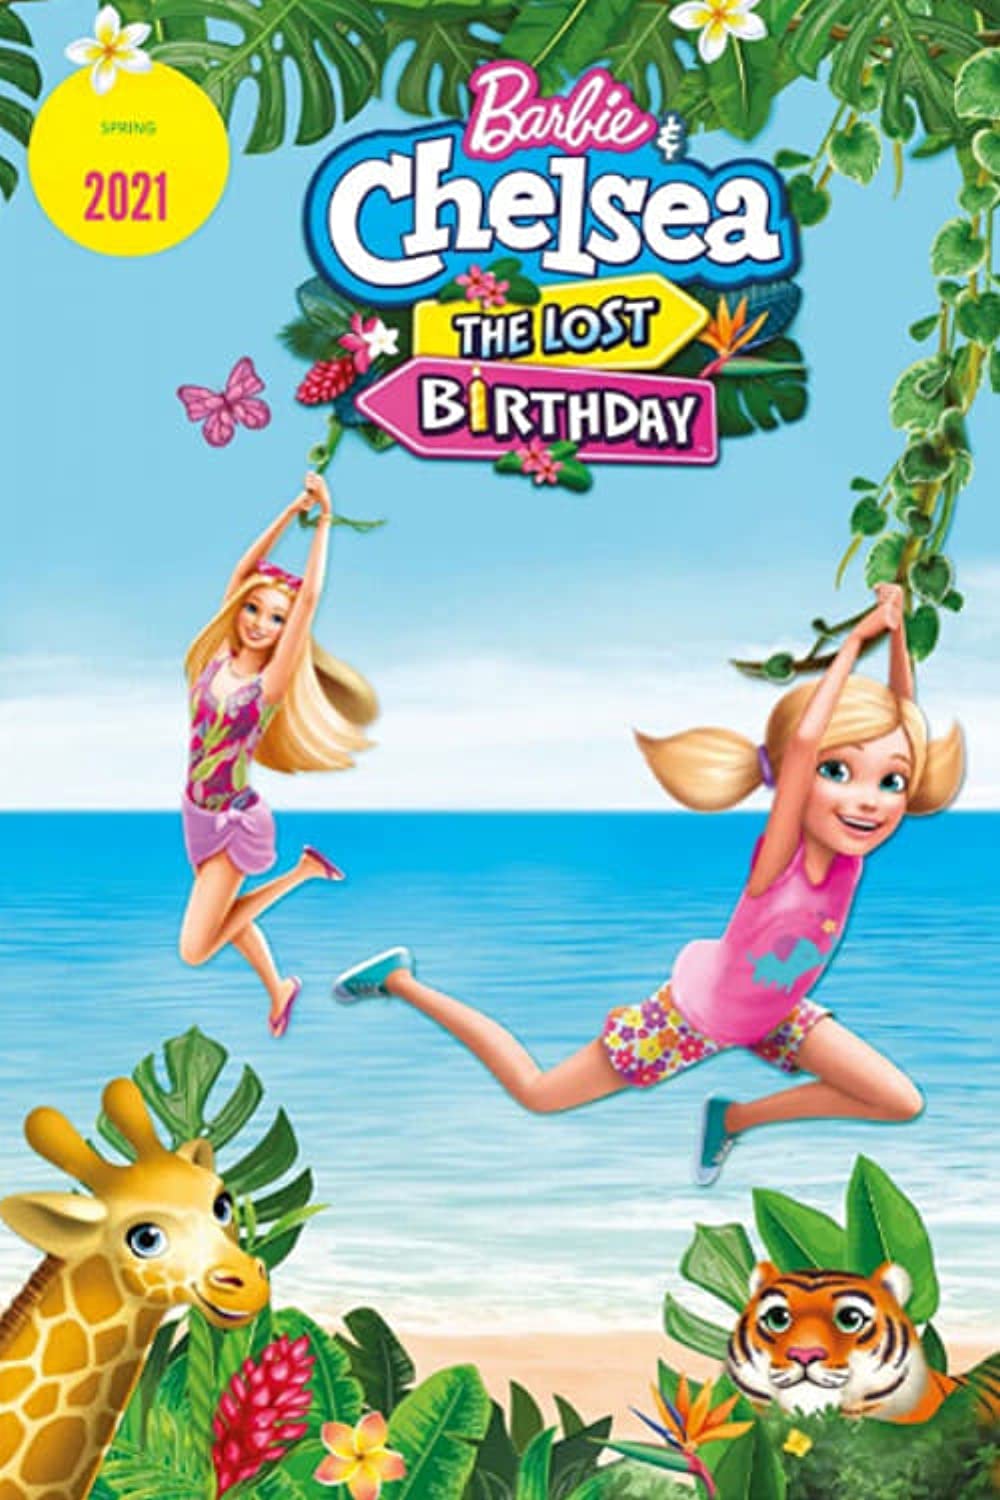 ดูการ์ตูน Barbie & Chelsea The Lost Birthday (2021) บาร์บี้กับเชลซี วันเกิดที่หายไป [Full-HD]